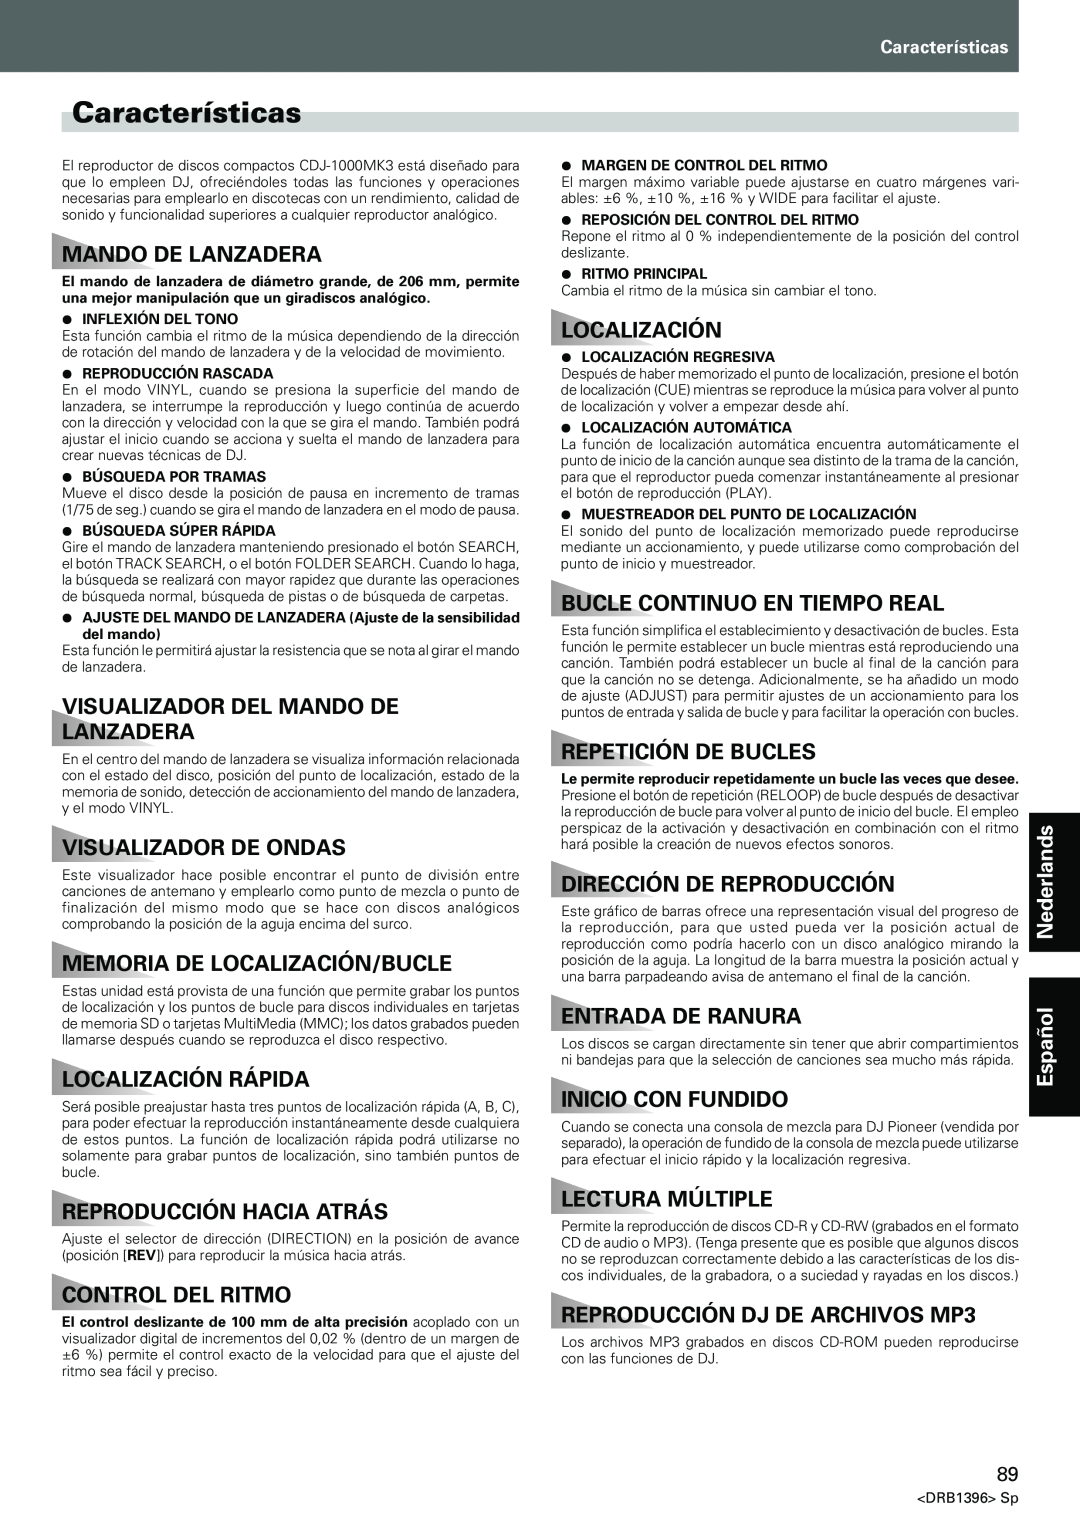 Pioneer CDJ-1000MK3 Características, Visualizador Del Mando De Lanzadera, Visualizador De Ondas, Localización Rápida 